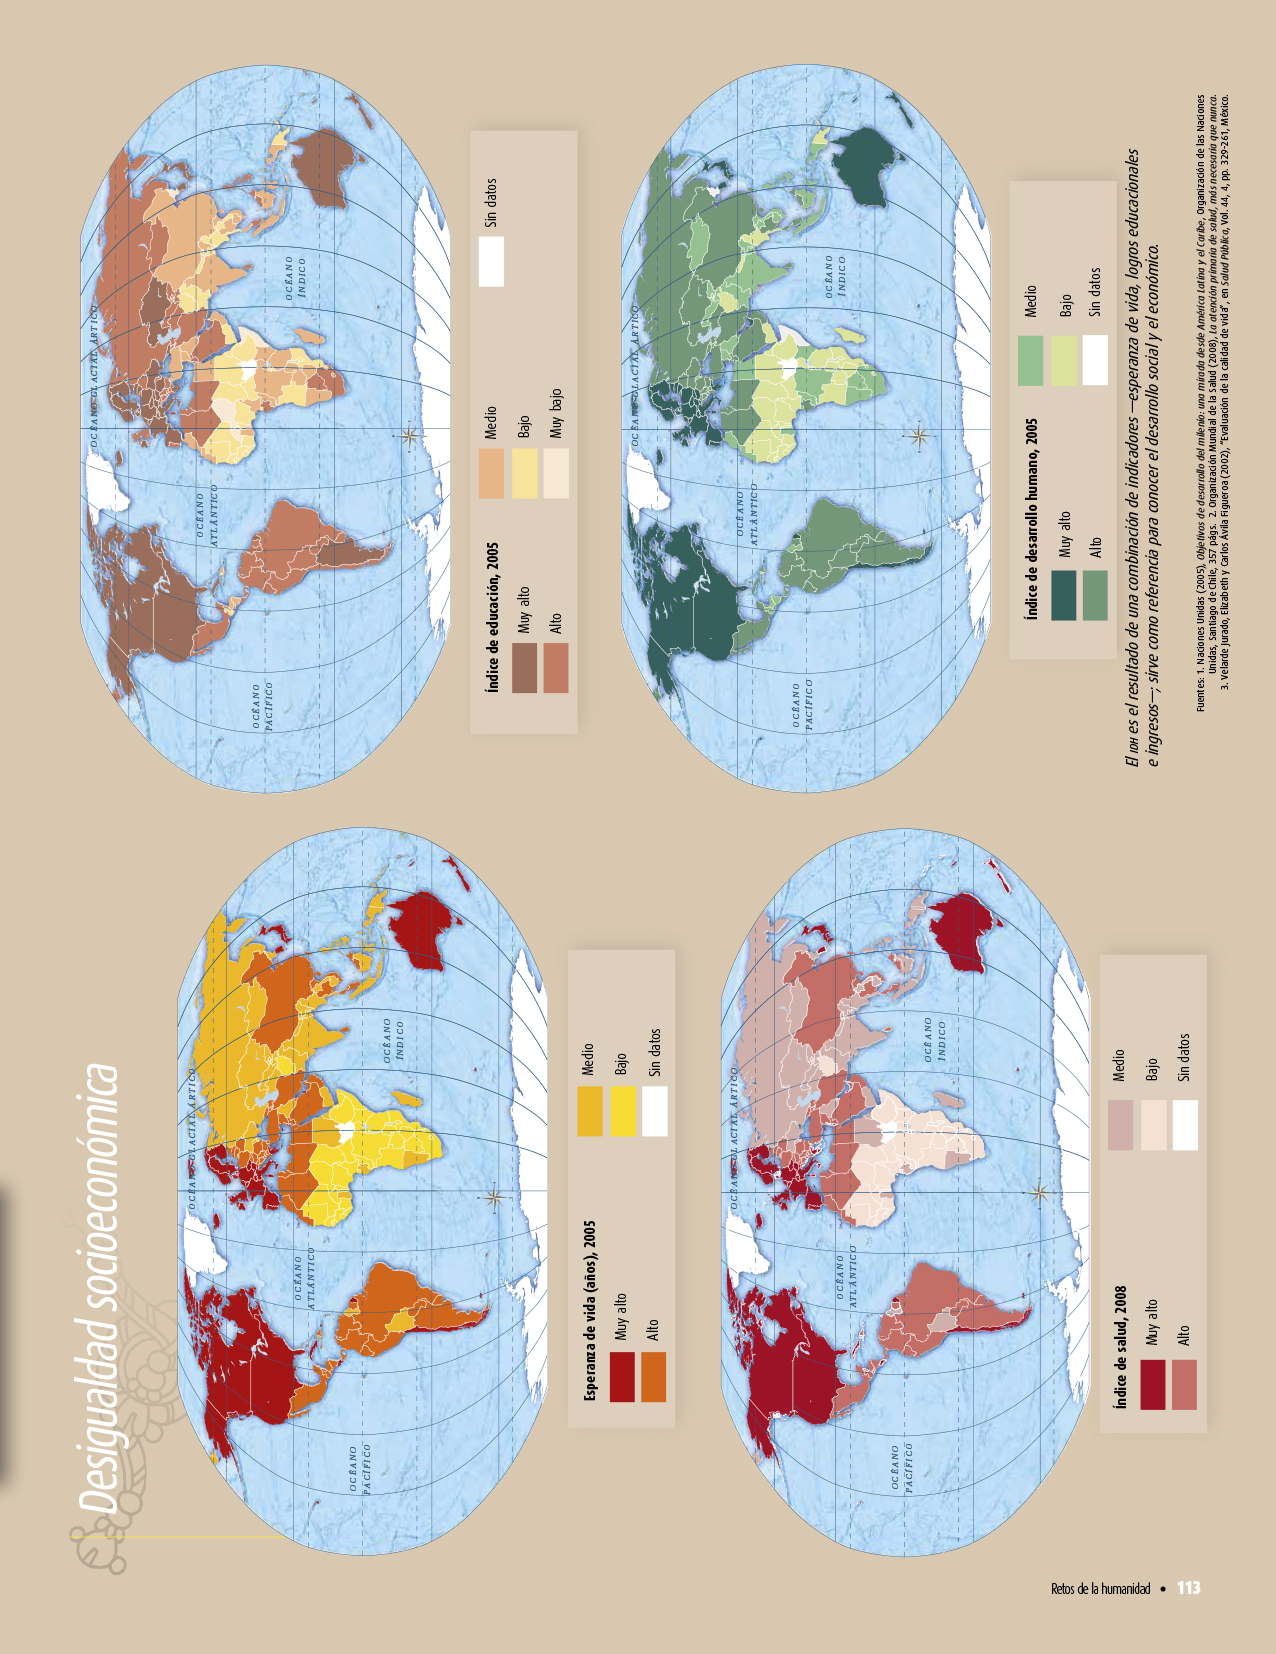 Atlas de geografía del mundo quinto grado 2017-2018 – Página 113